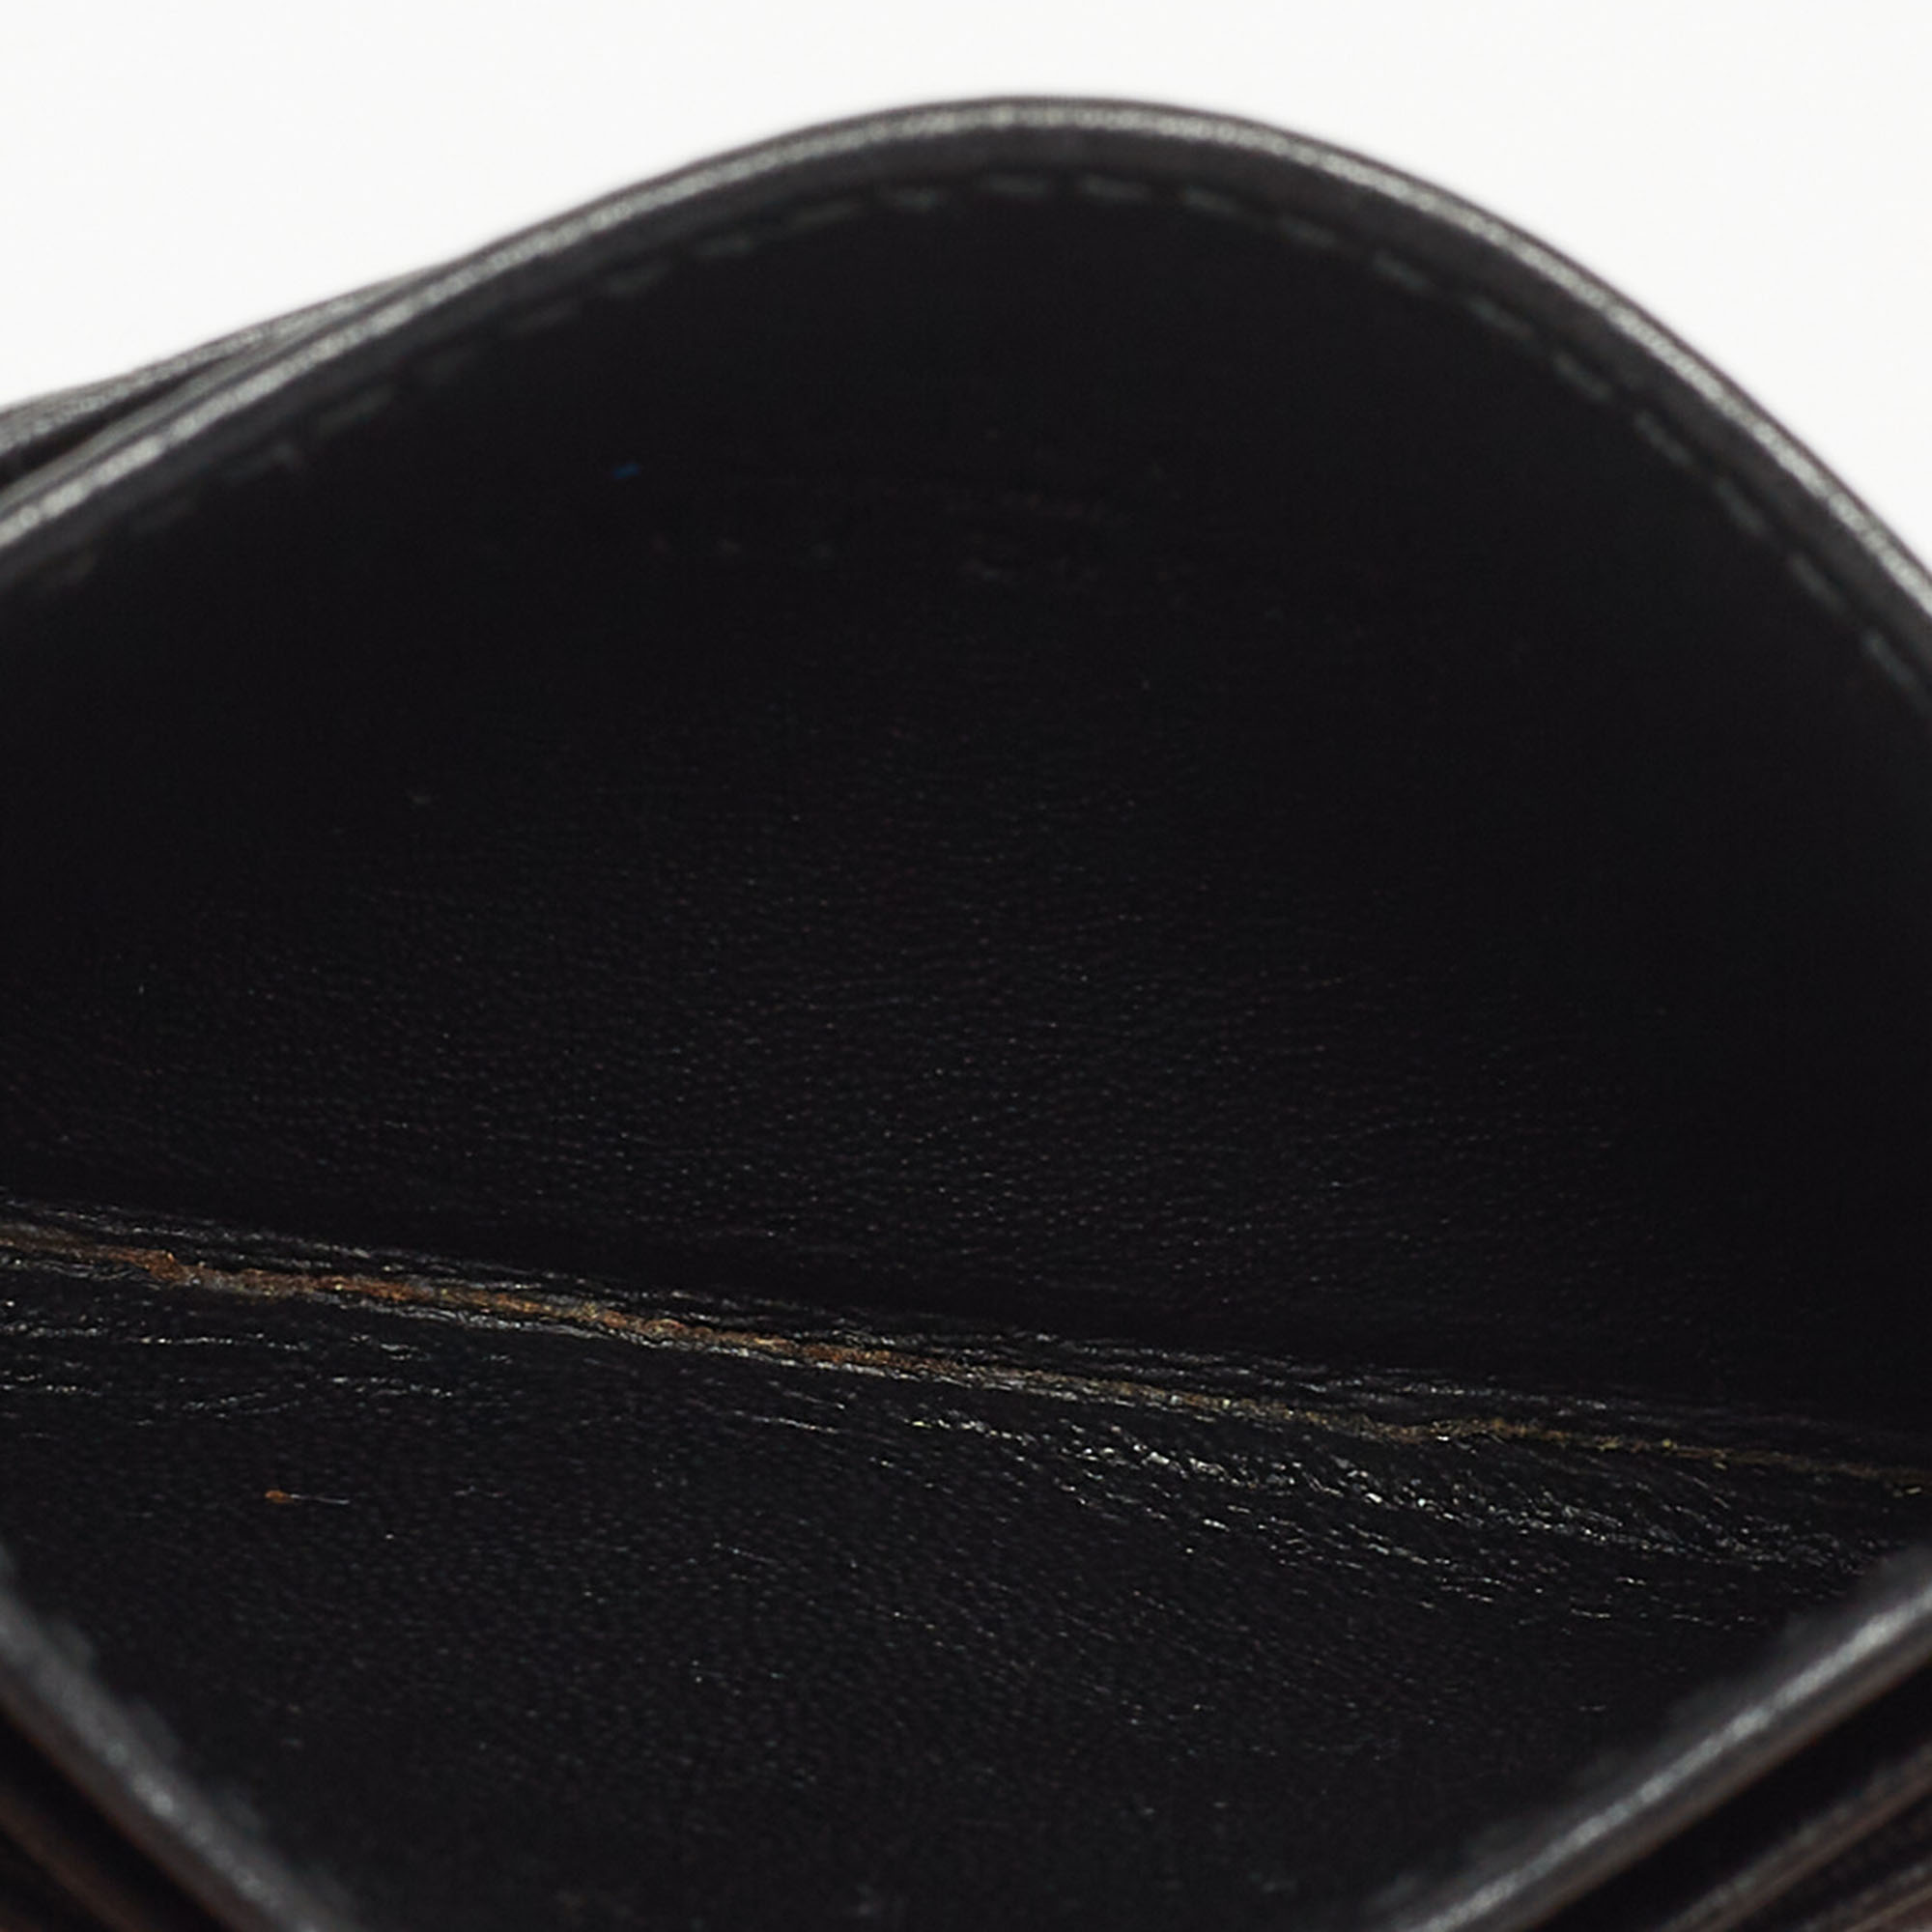 

Gucci Black Matelassé Leather GG Marmont Card Case